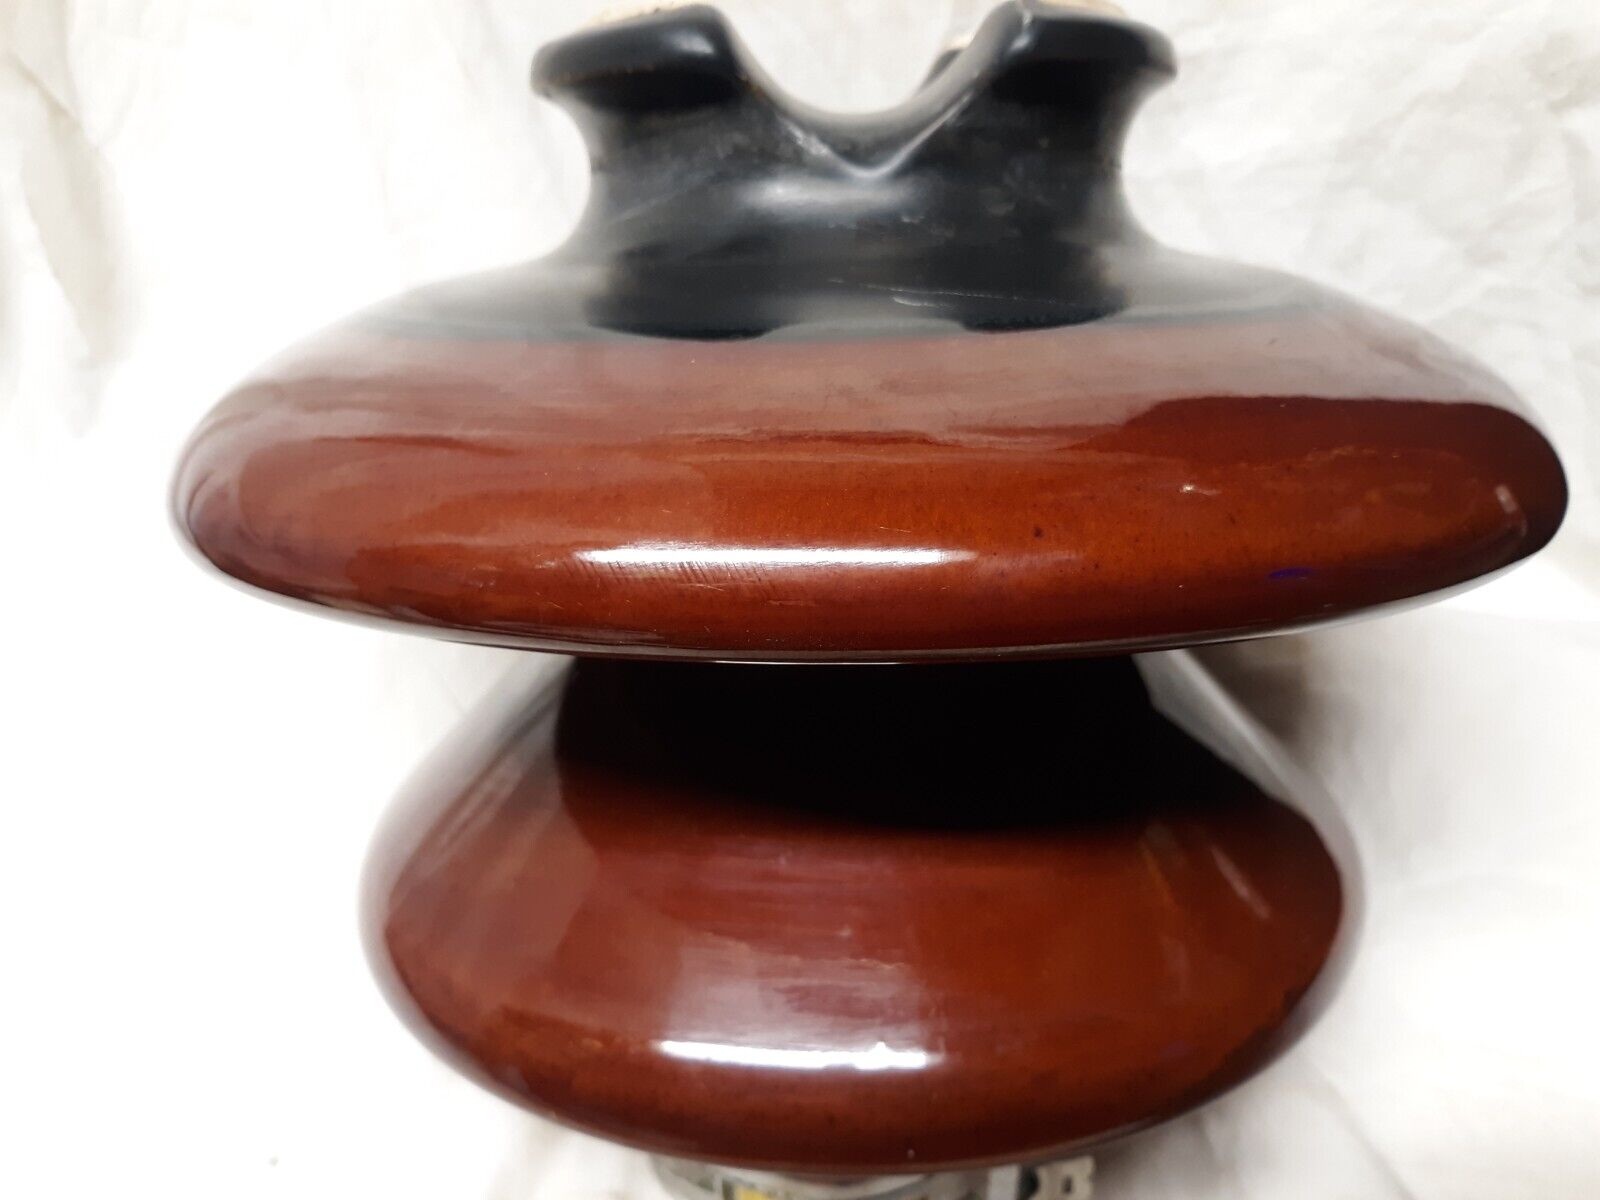 Vintage Large Two-tone Brown/Black Porcelain Mushroom Insulator - 10\